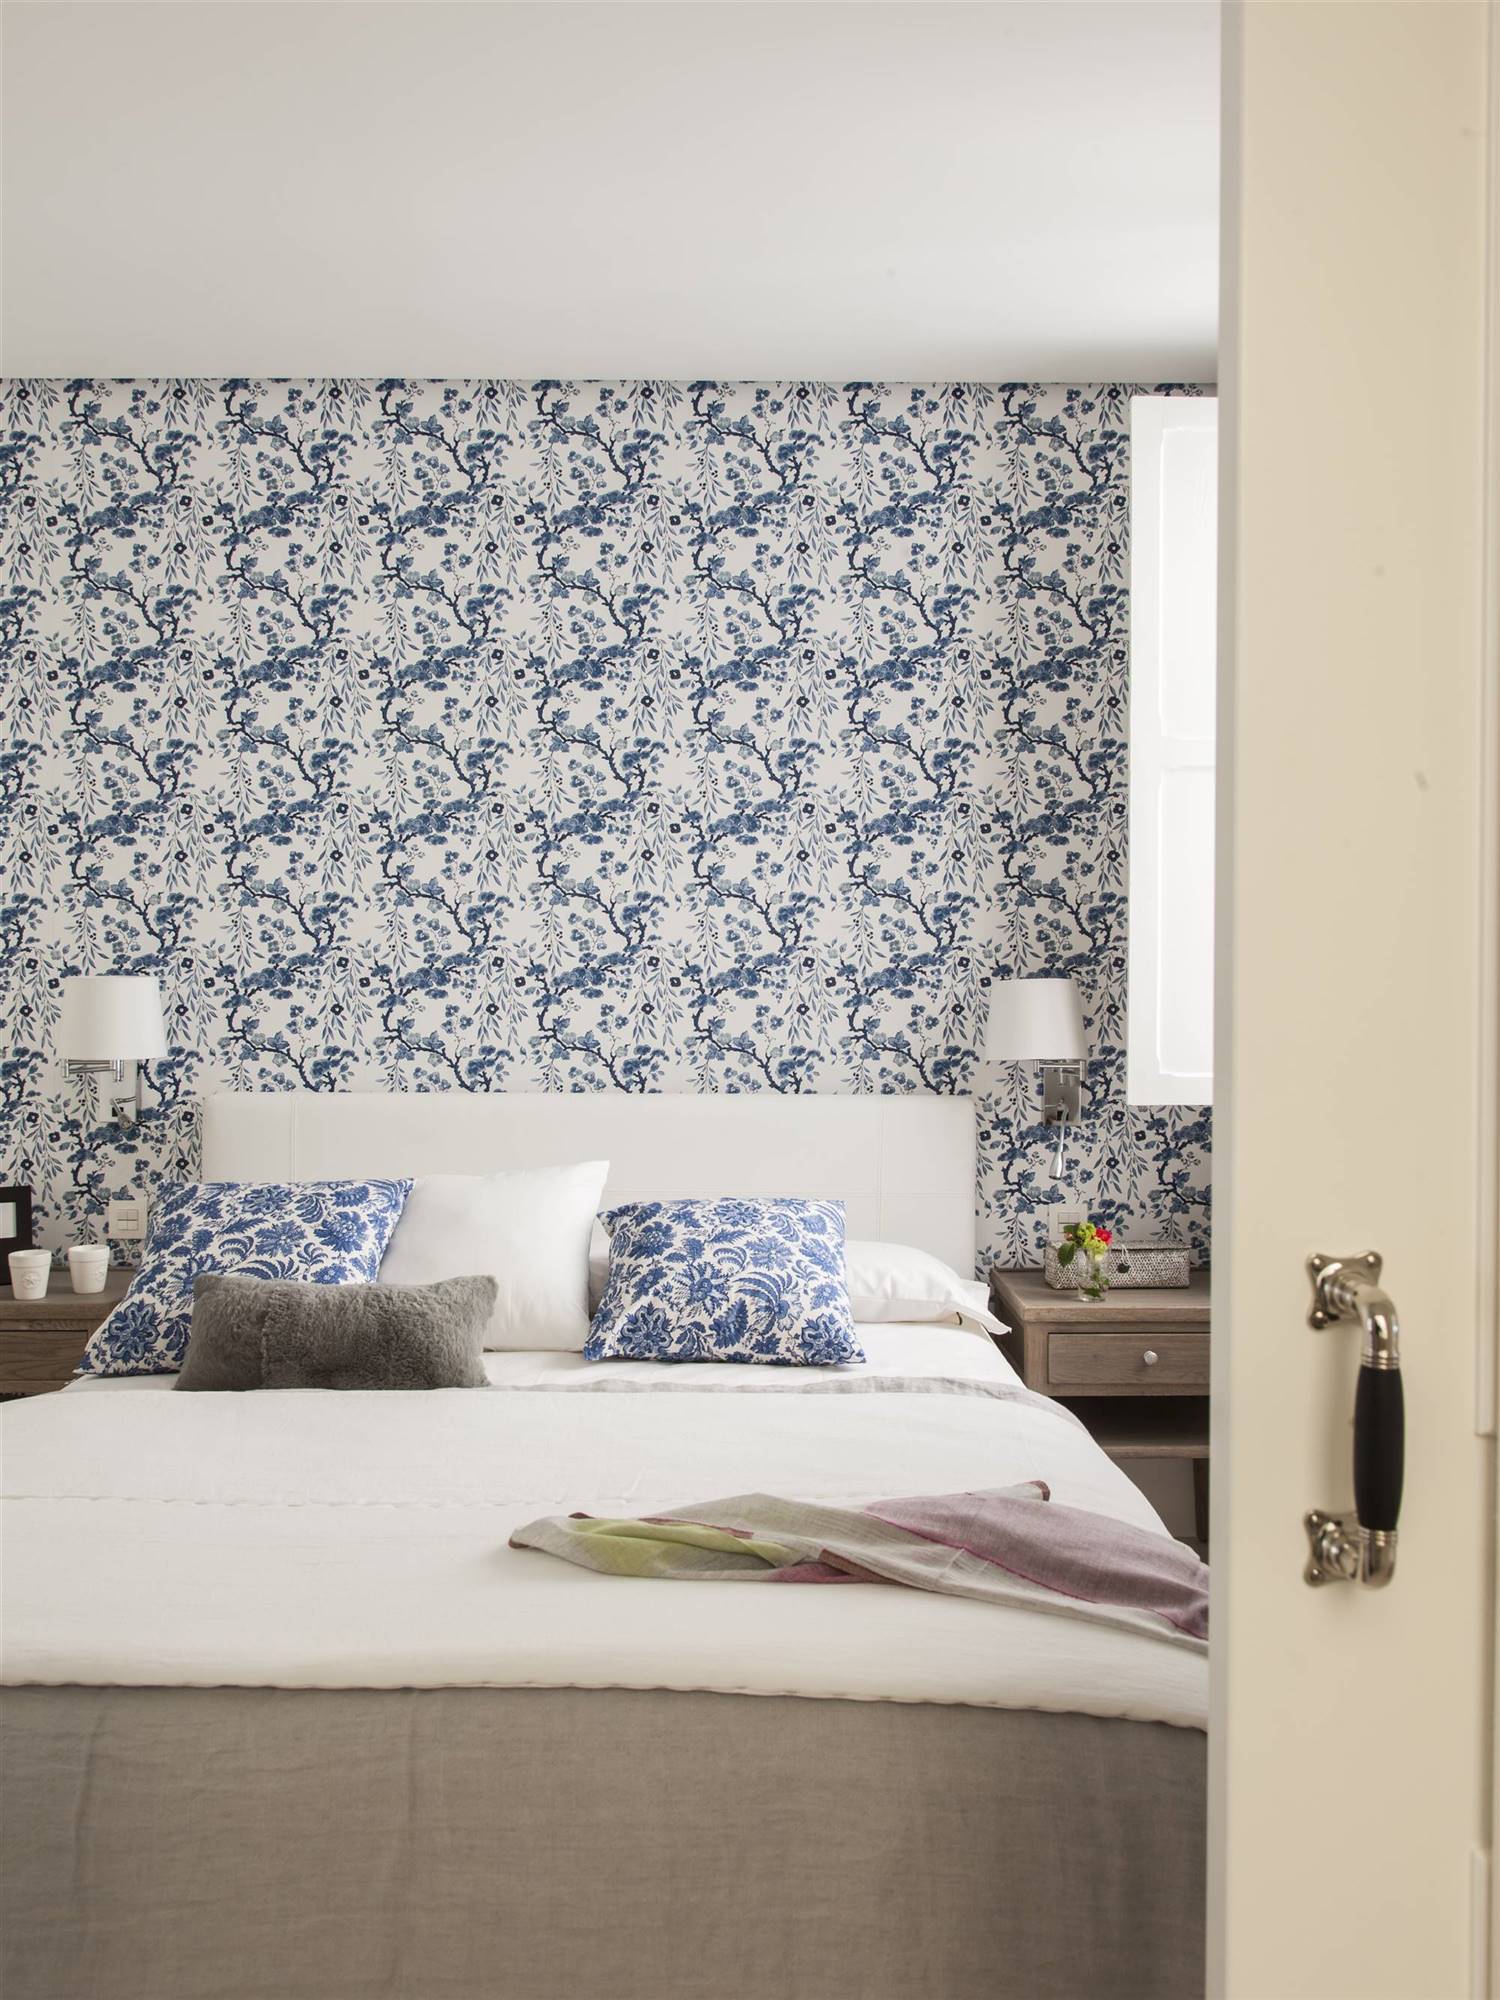 dormitorio con papel pintado floral azul y blanco 00407891 O